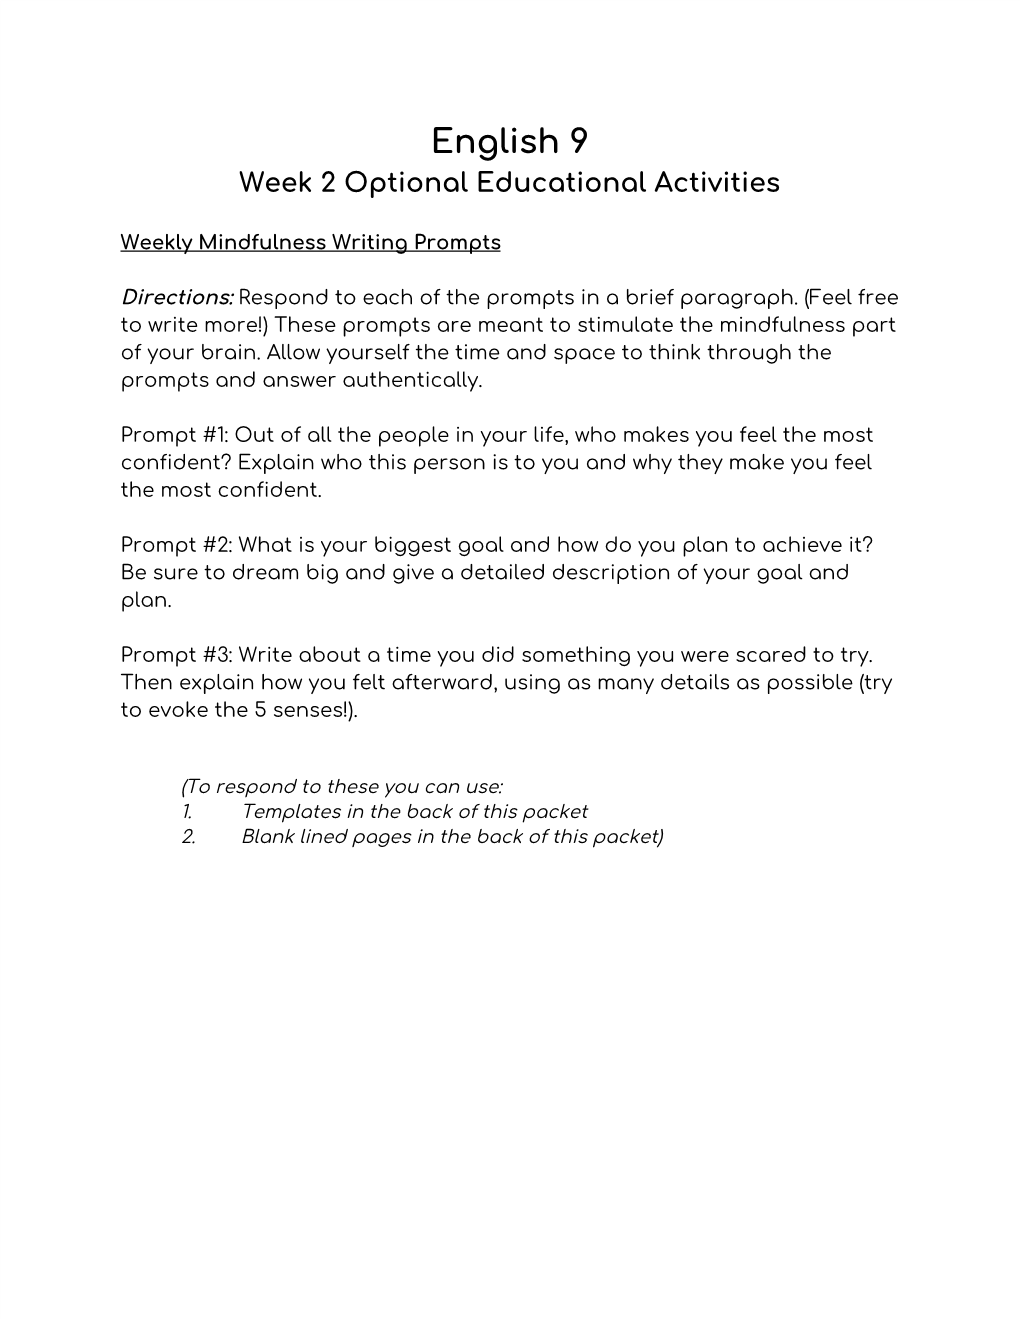 English 9 Week 2 Optional Educational Activities